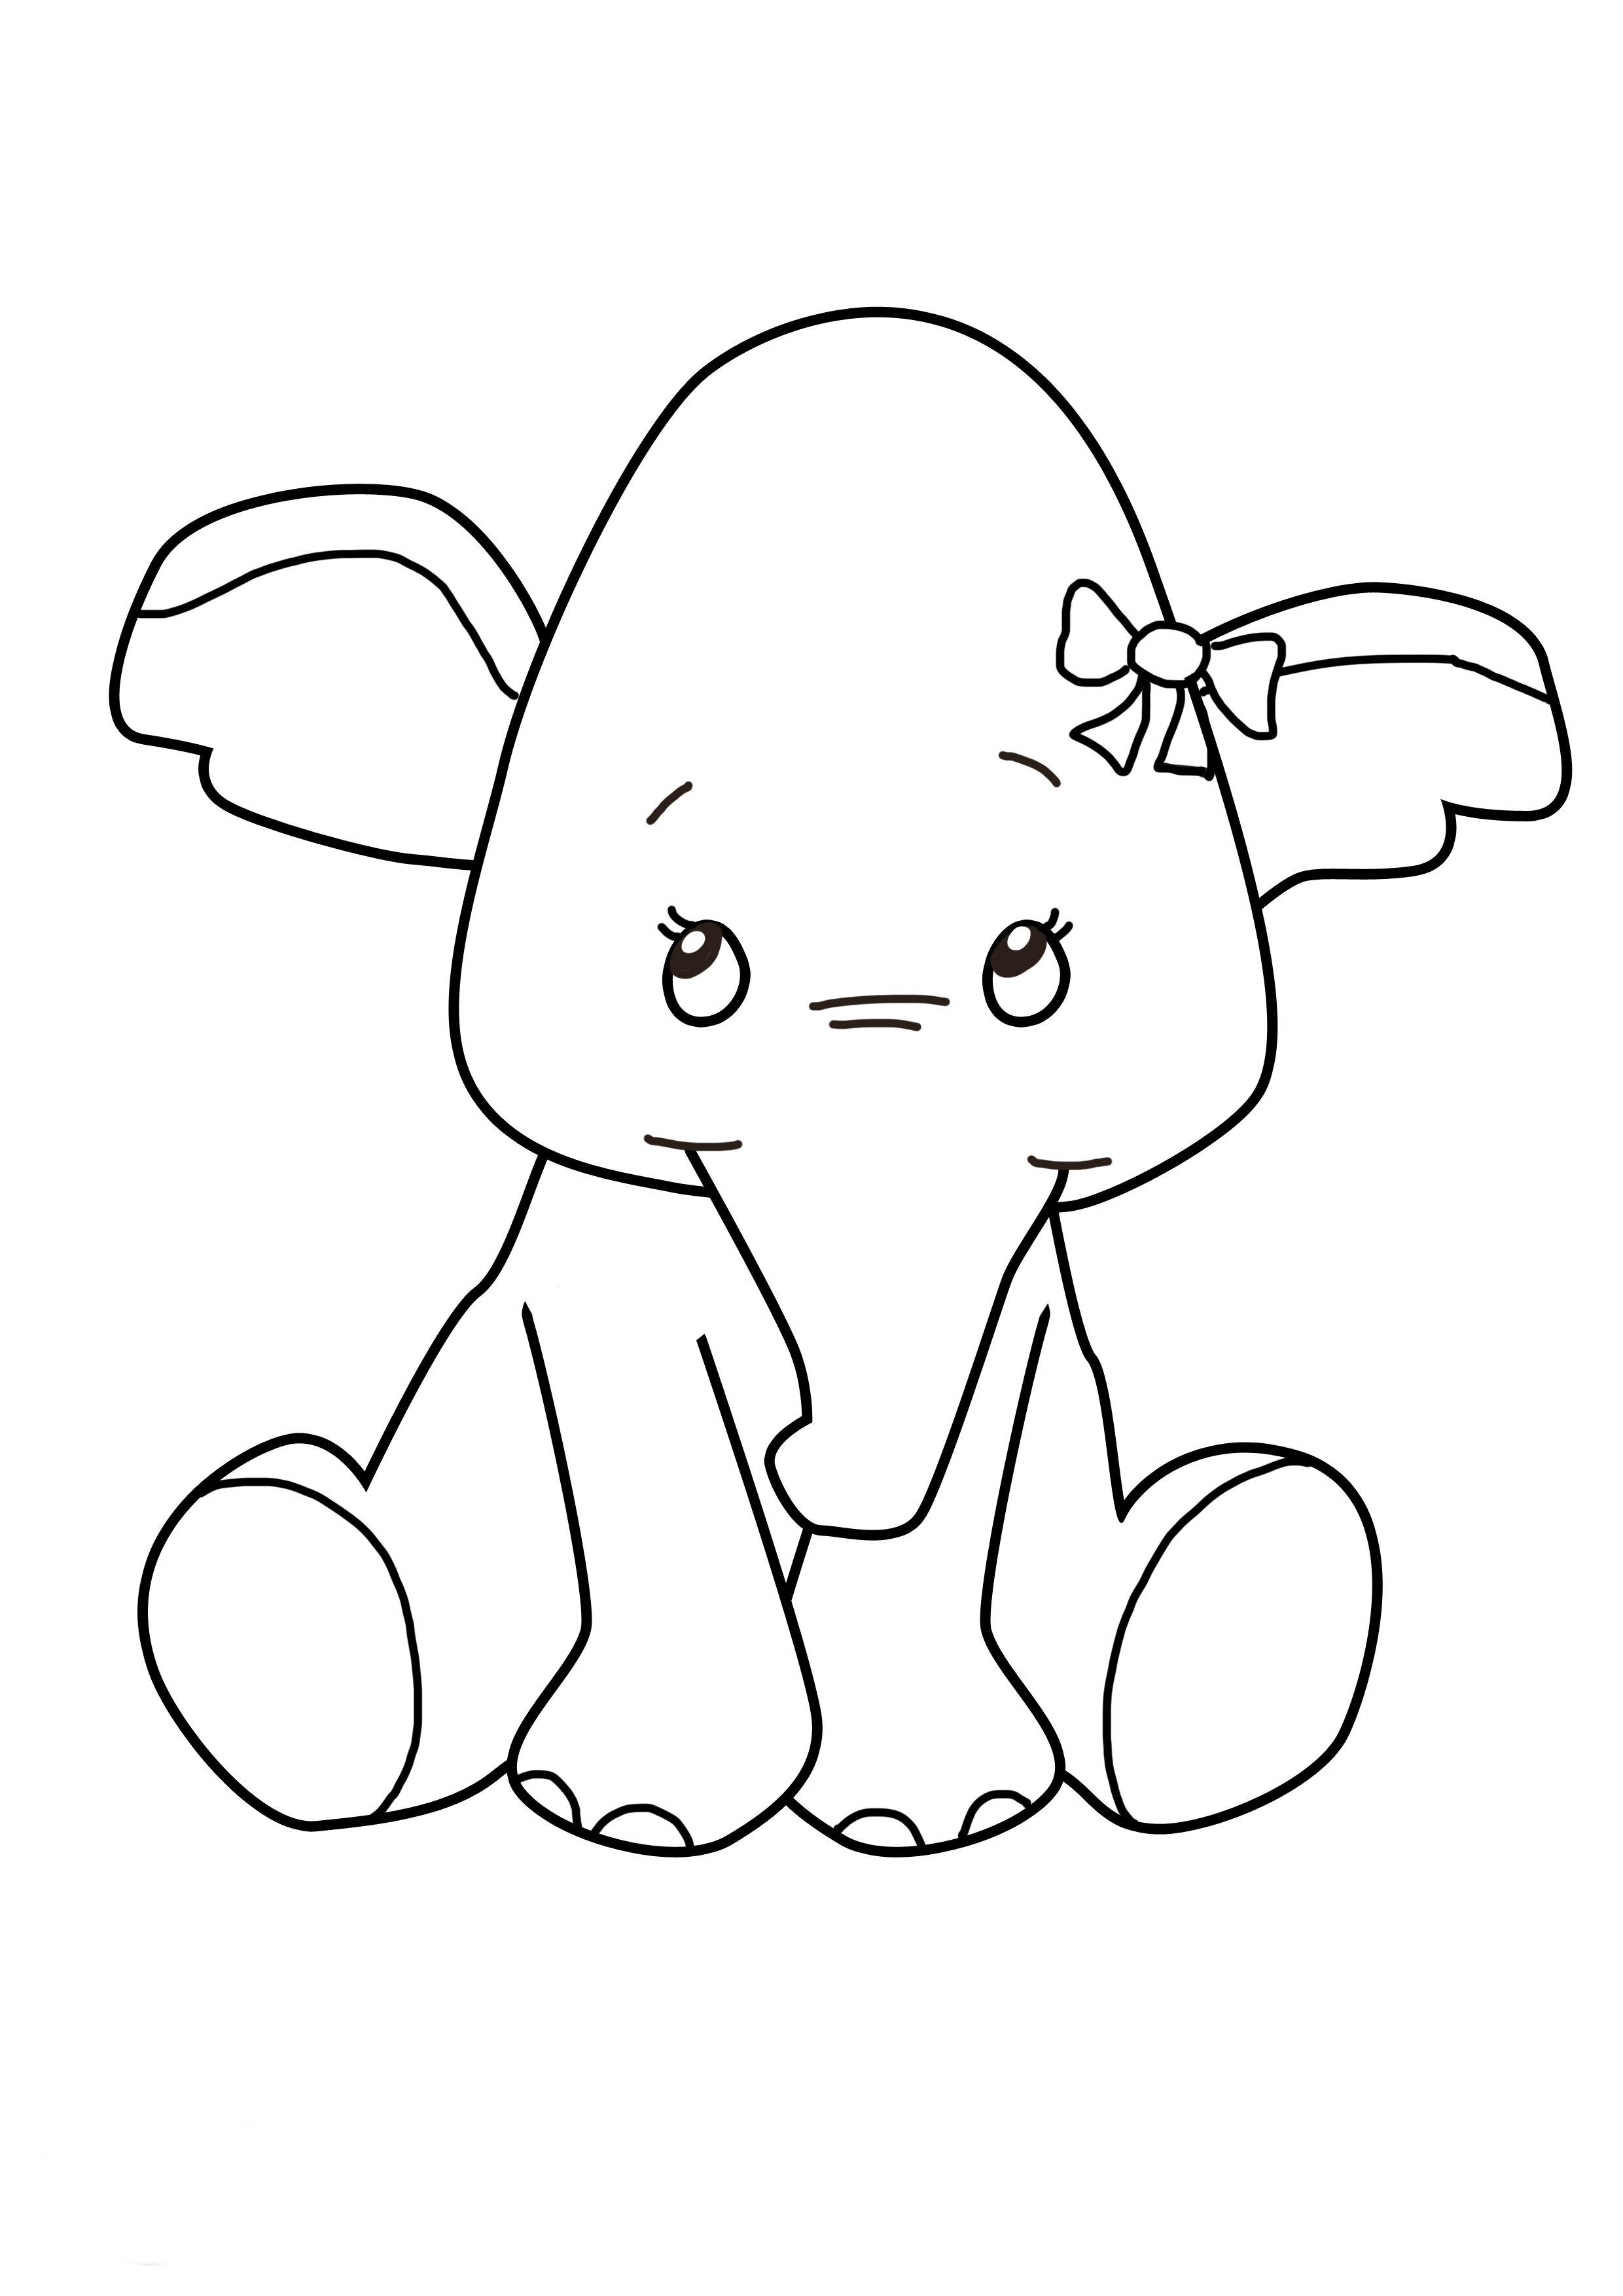 Disegno di Elefante bambino da colorare 2